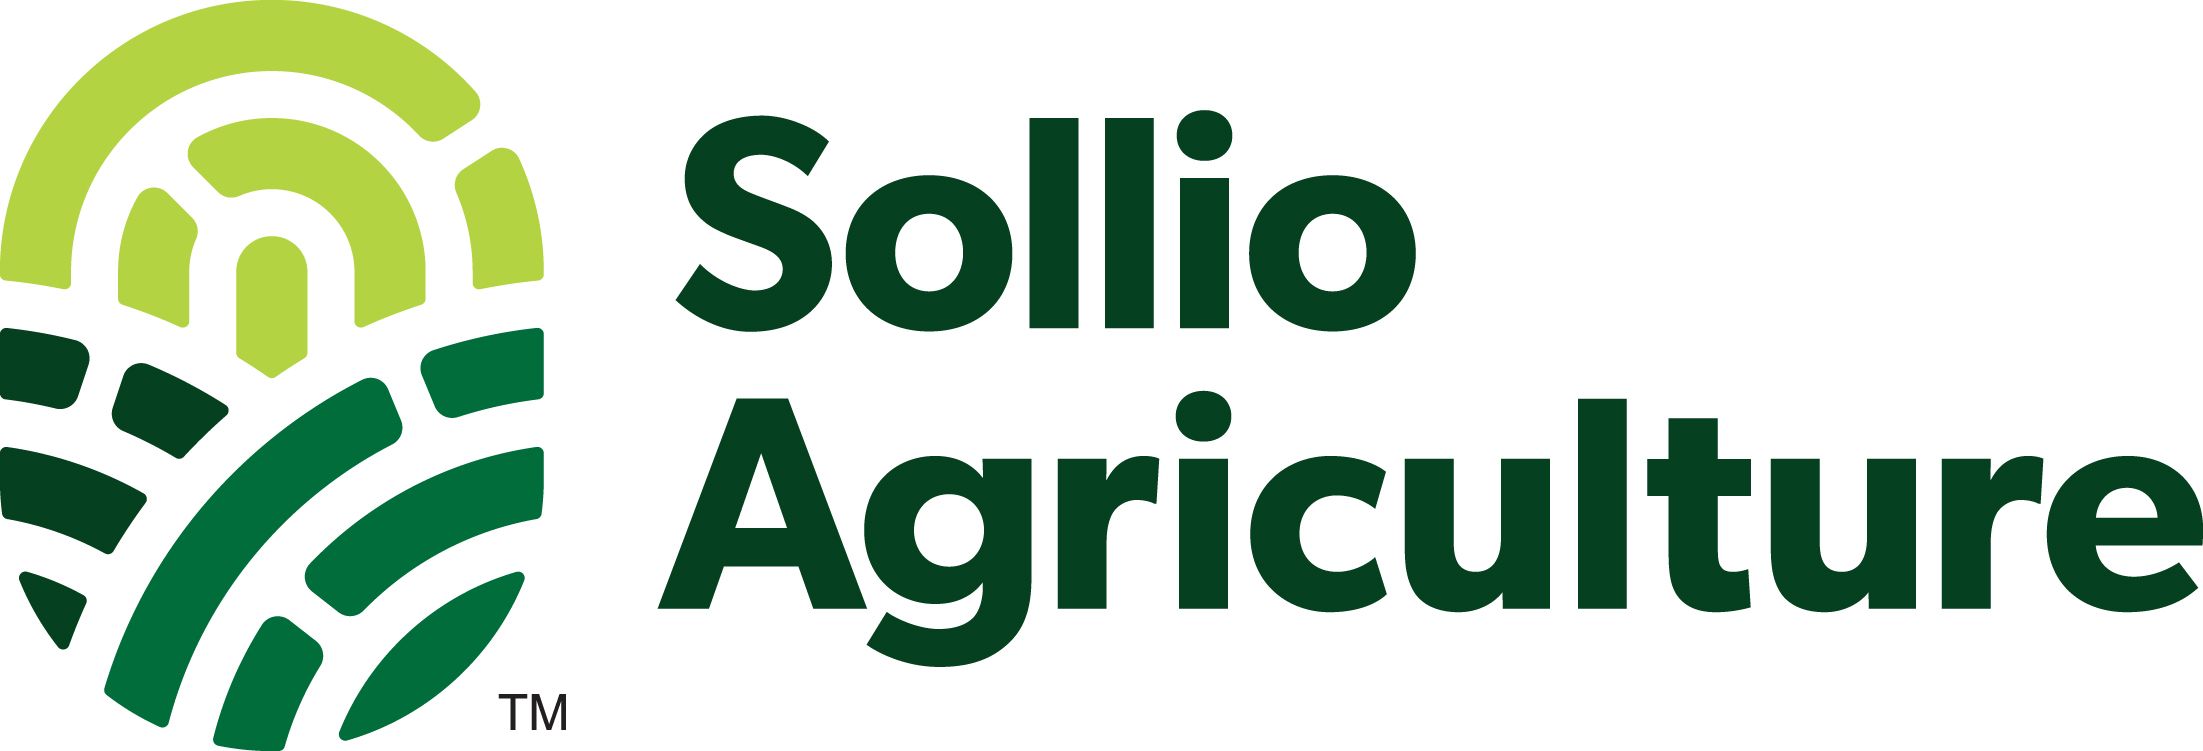 sollio-agriculture-logo